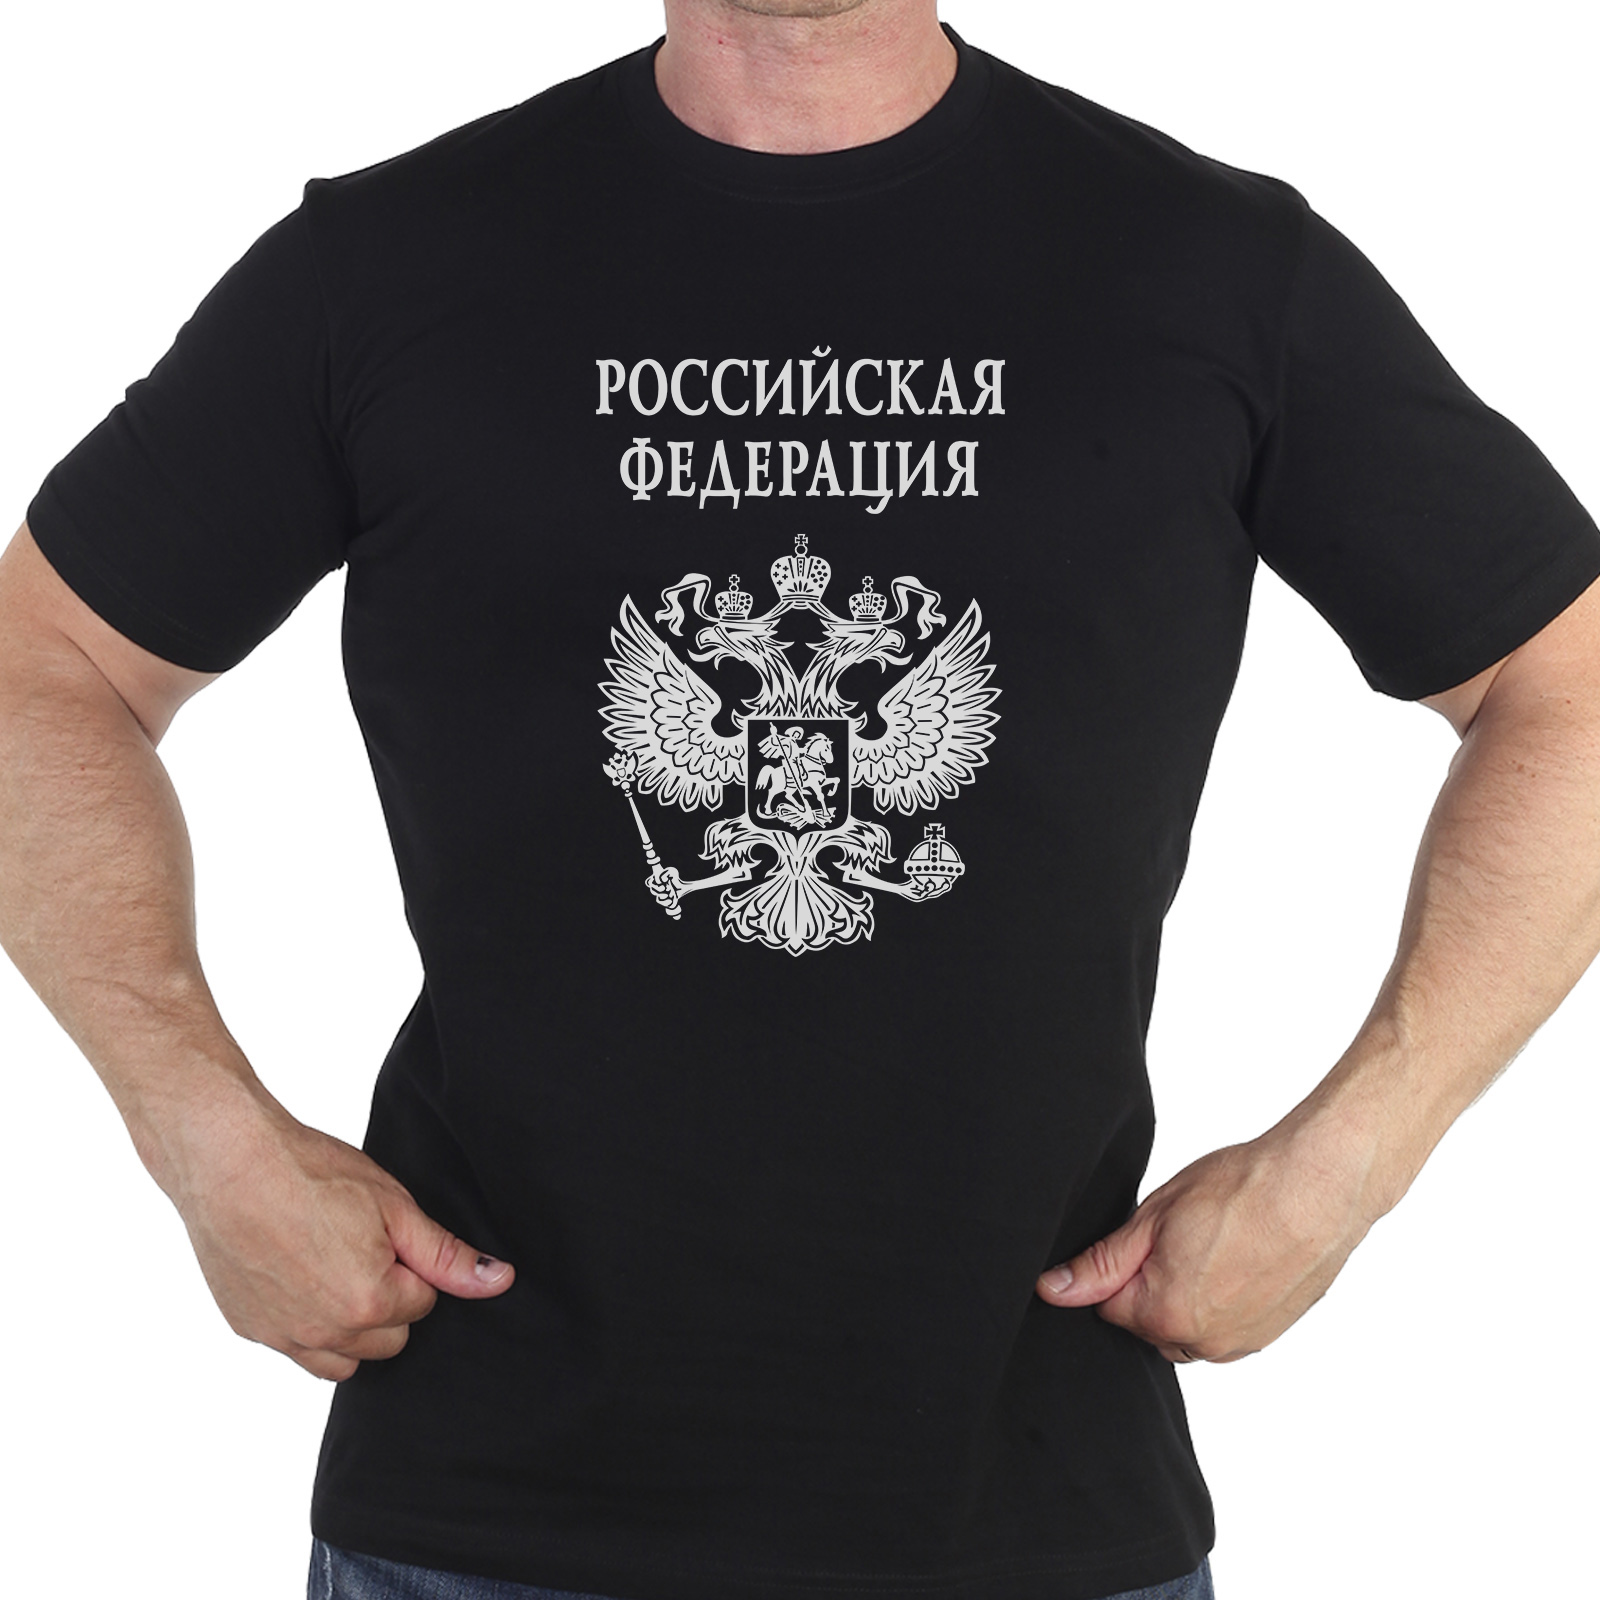 Купить в интернет магазине футболку с гербом России